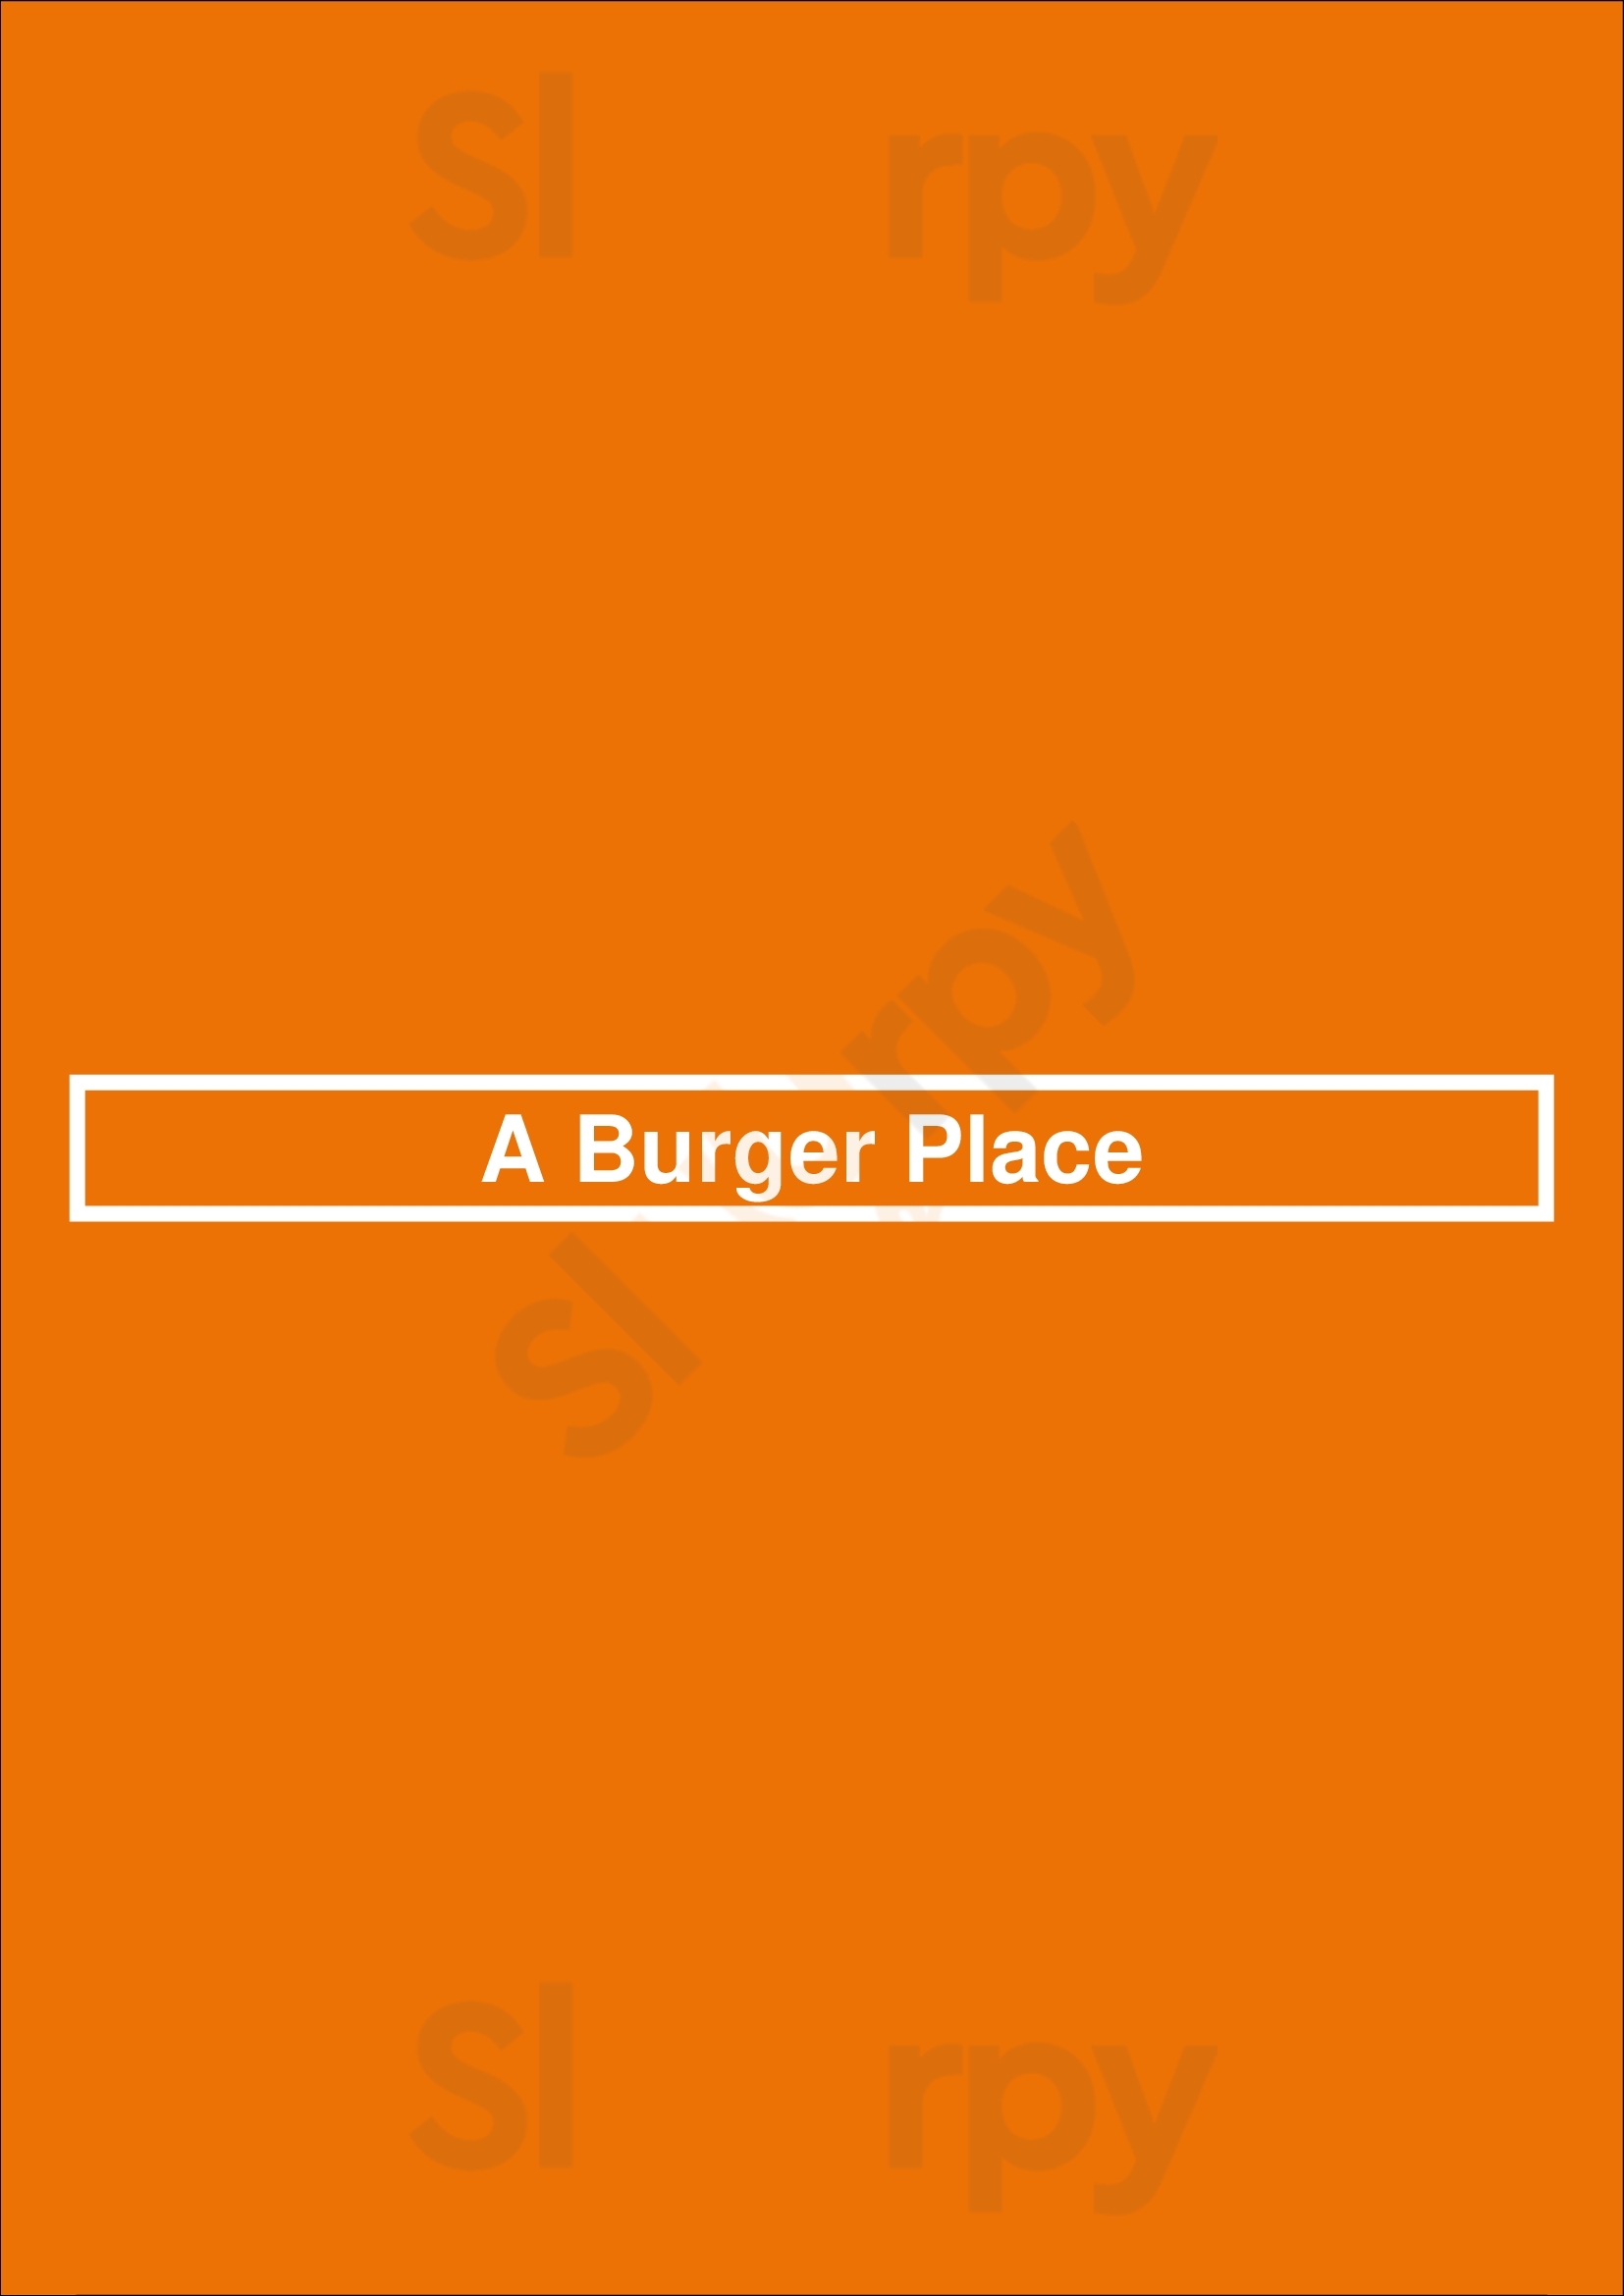 A Burger Place Seattle Menu - 1